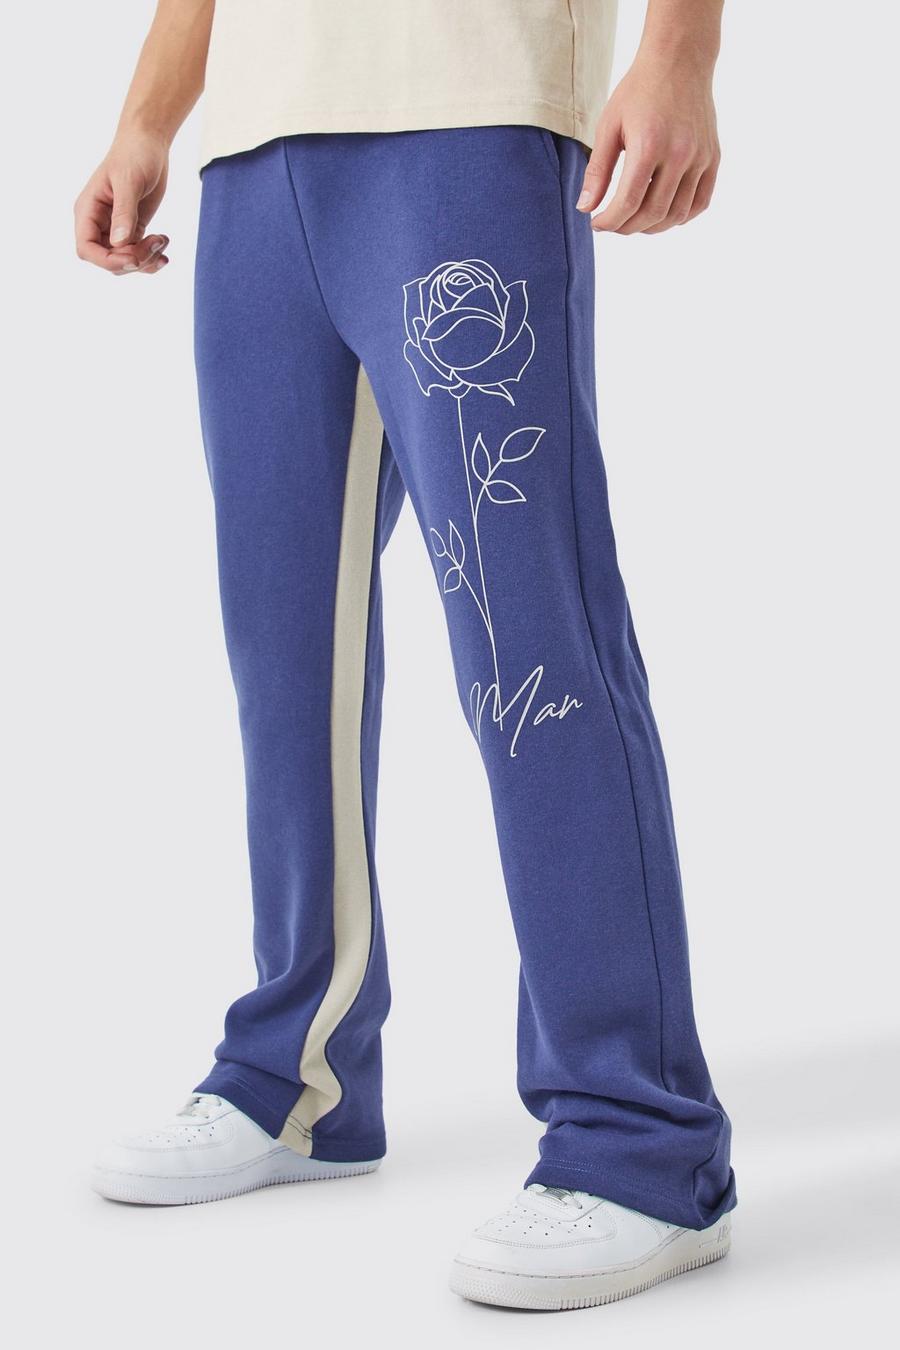 Pantalón deportivo MAN con refuerzo y estampado de rosas, Slate blue image number 1